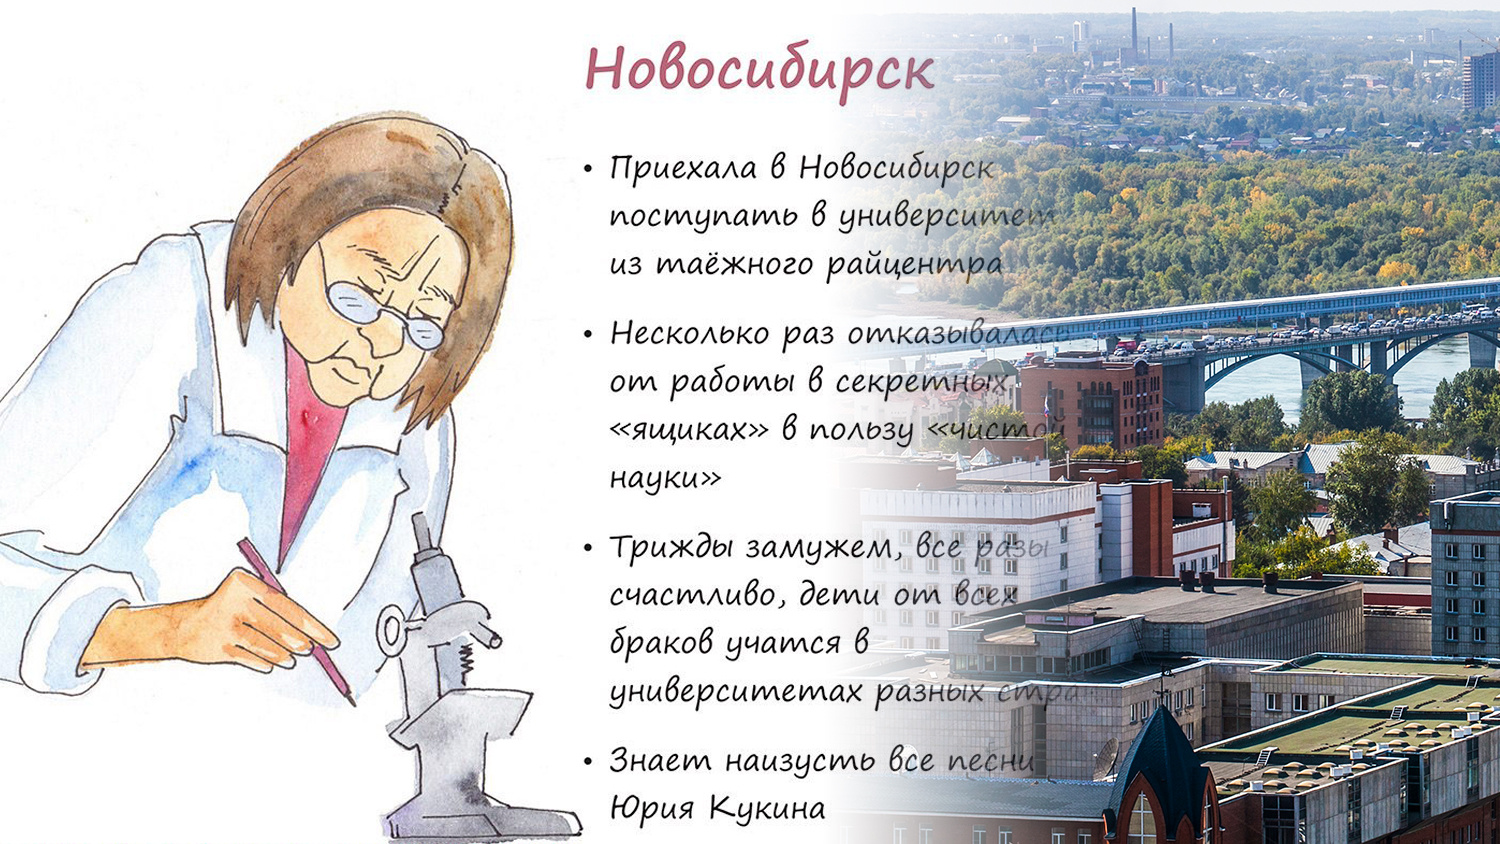 Сибирячка нарисовала типичных жителей городов России. Догадайтесь, кто представляет Казань